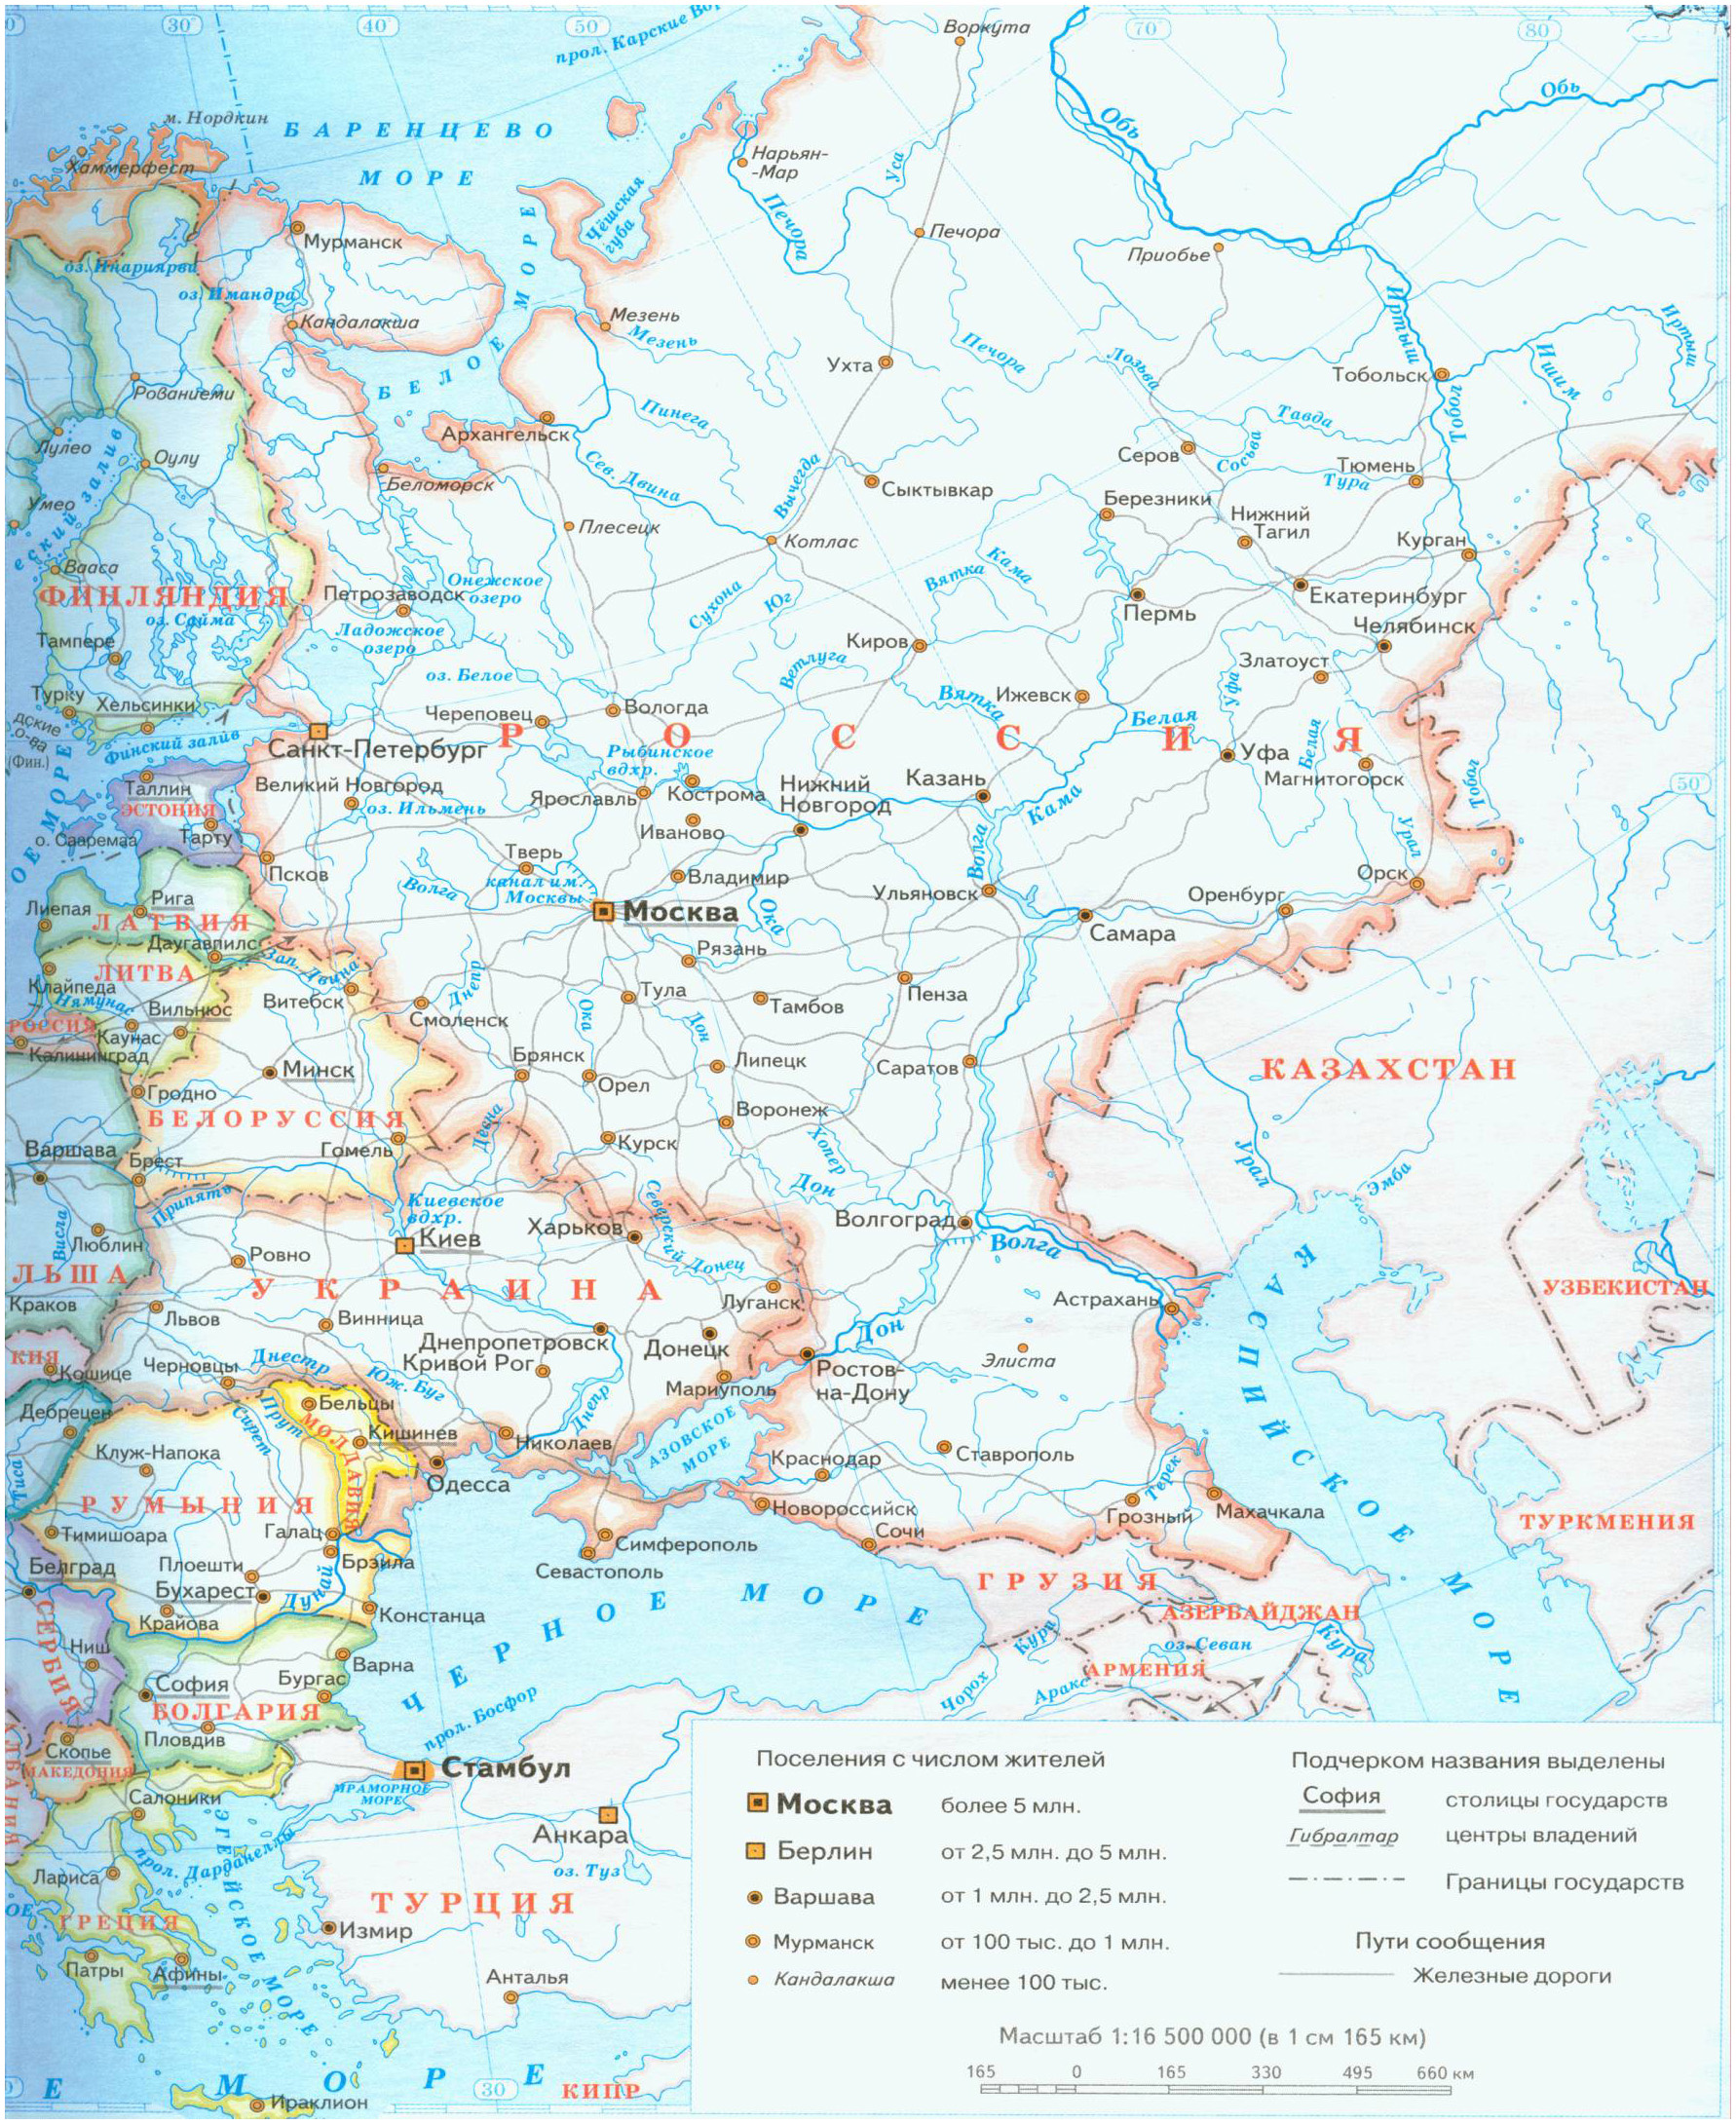 Подробная Европы, Европейская России на карте. Политическая карта Европы – страны Европы + Европейская часть | RUS Maps | Все карты России в одном месте